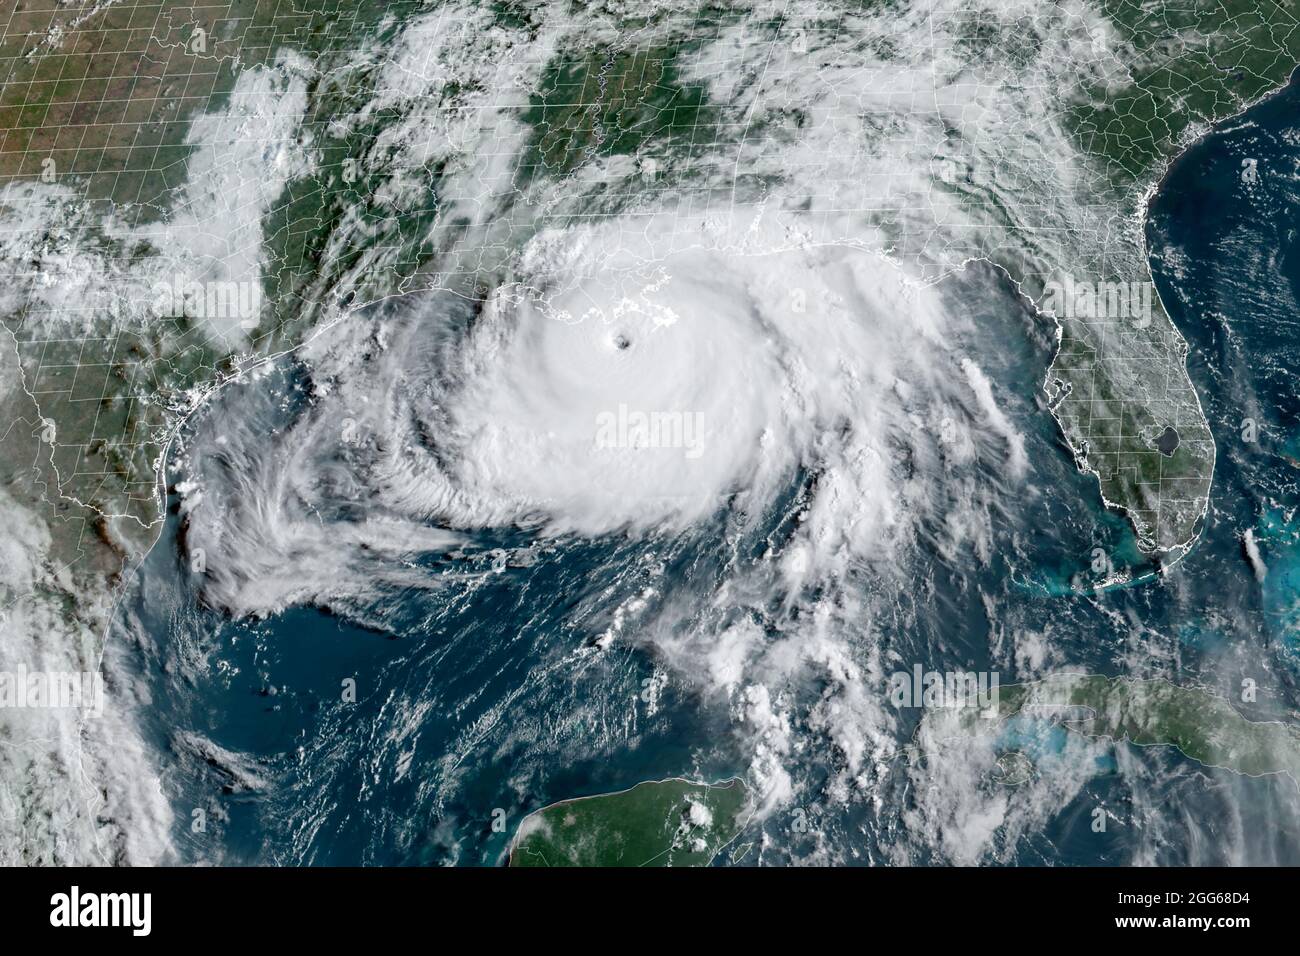 L'ouragan Ida sur le point de tomber le long de la côte du golfe en Louisiane comme un ouragan catastrophique de catégorie 4 avec des vents soutenus de 150 mph le dimanche 29 août 2021. (ÉTATS-UNIS) Banque D'Images